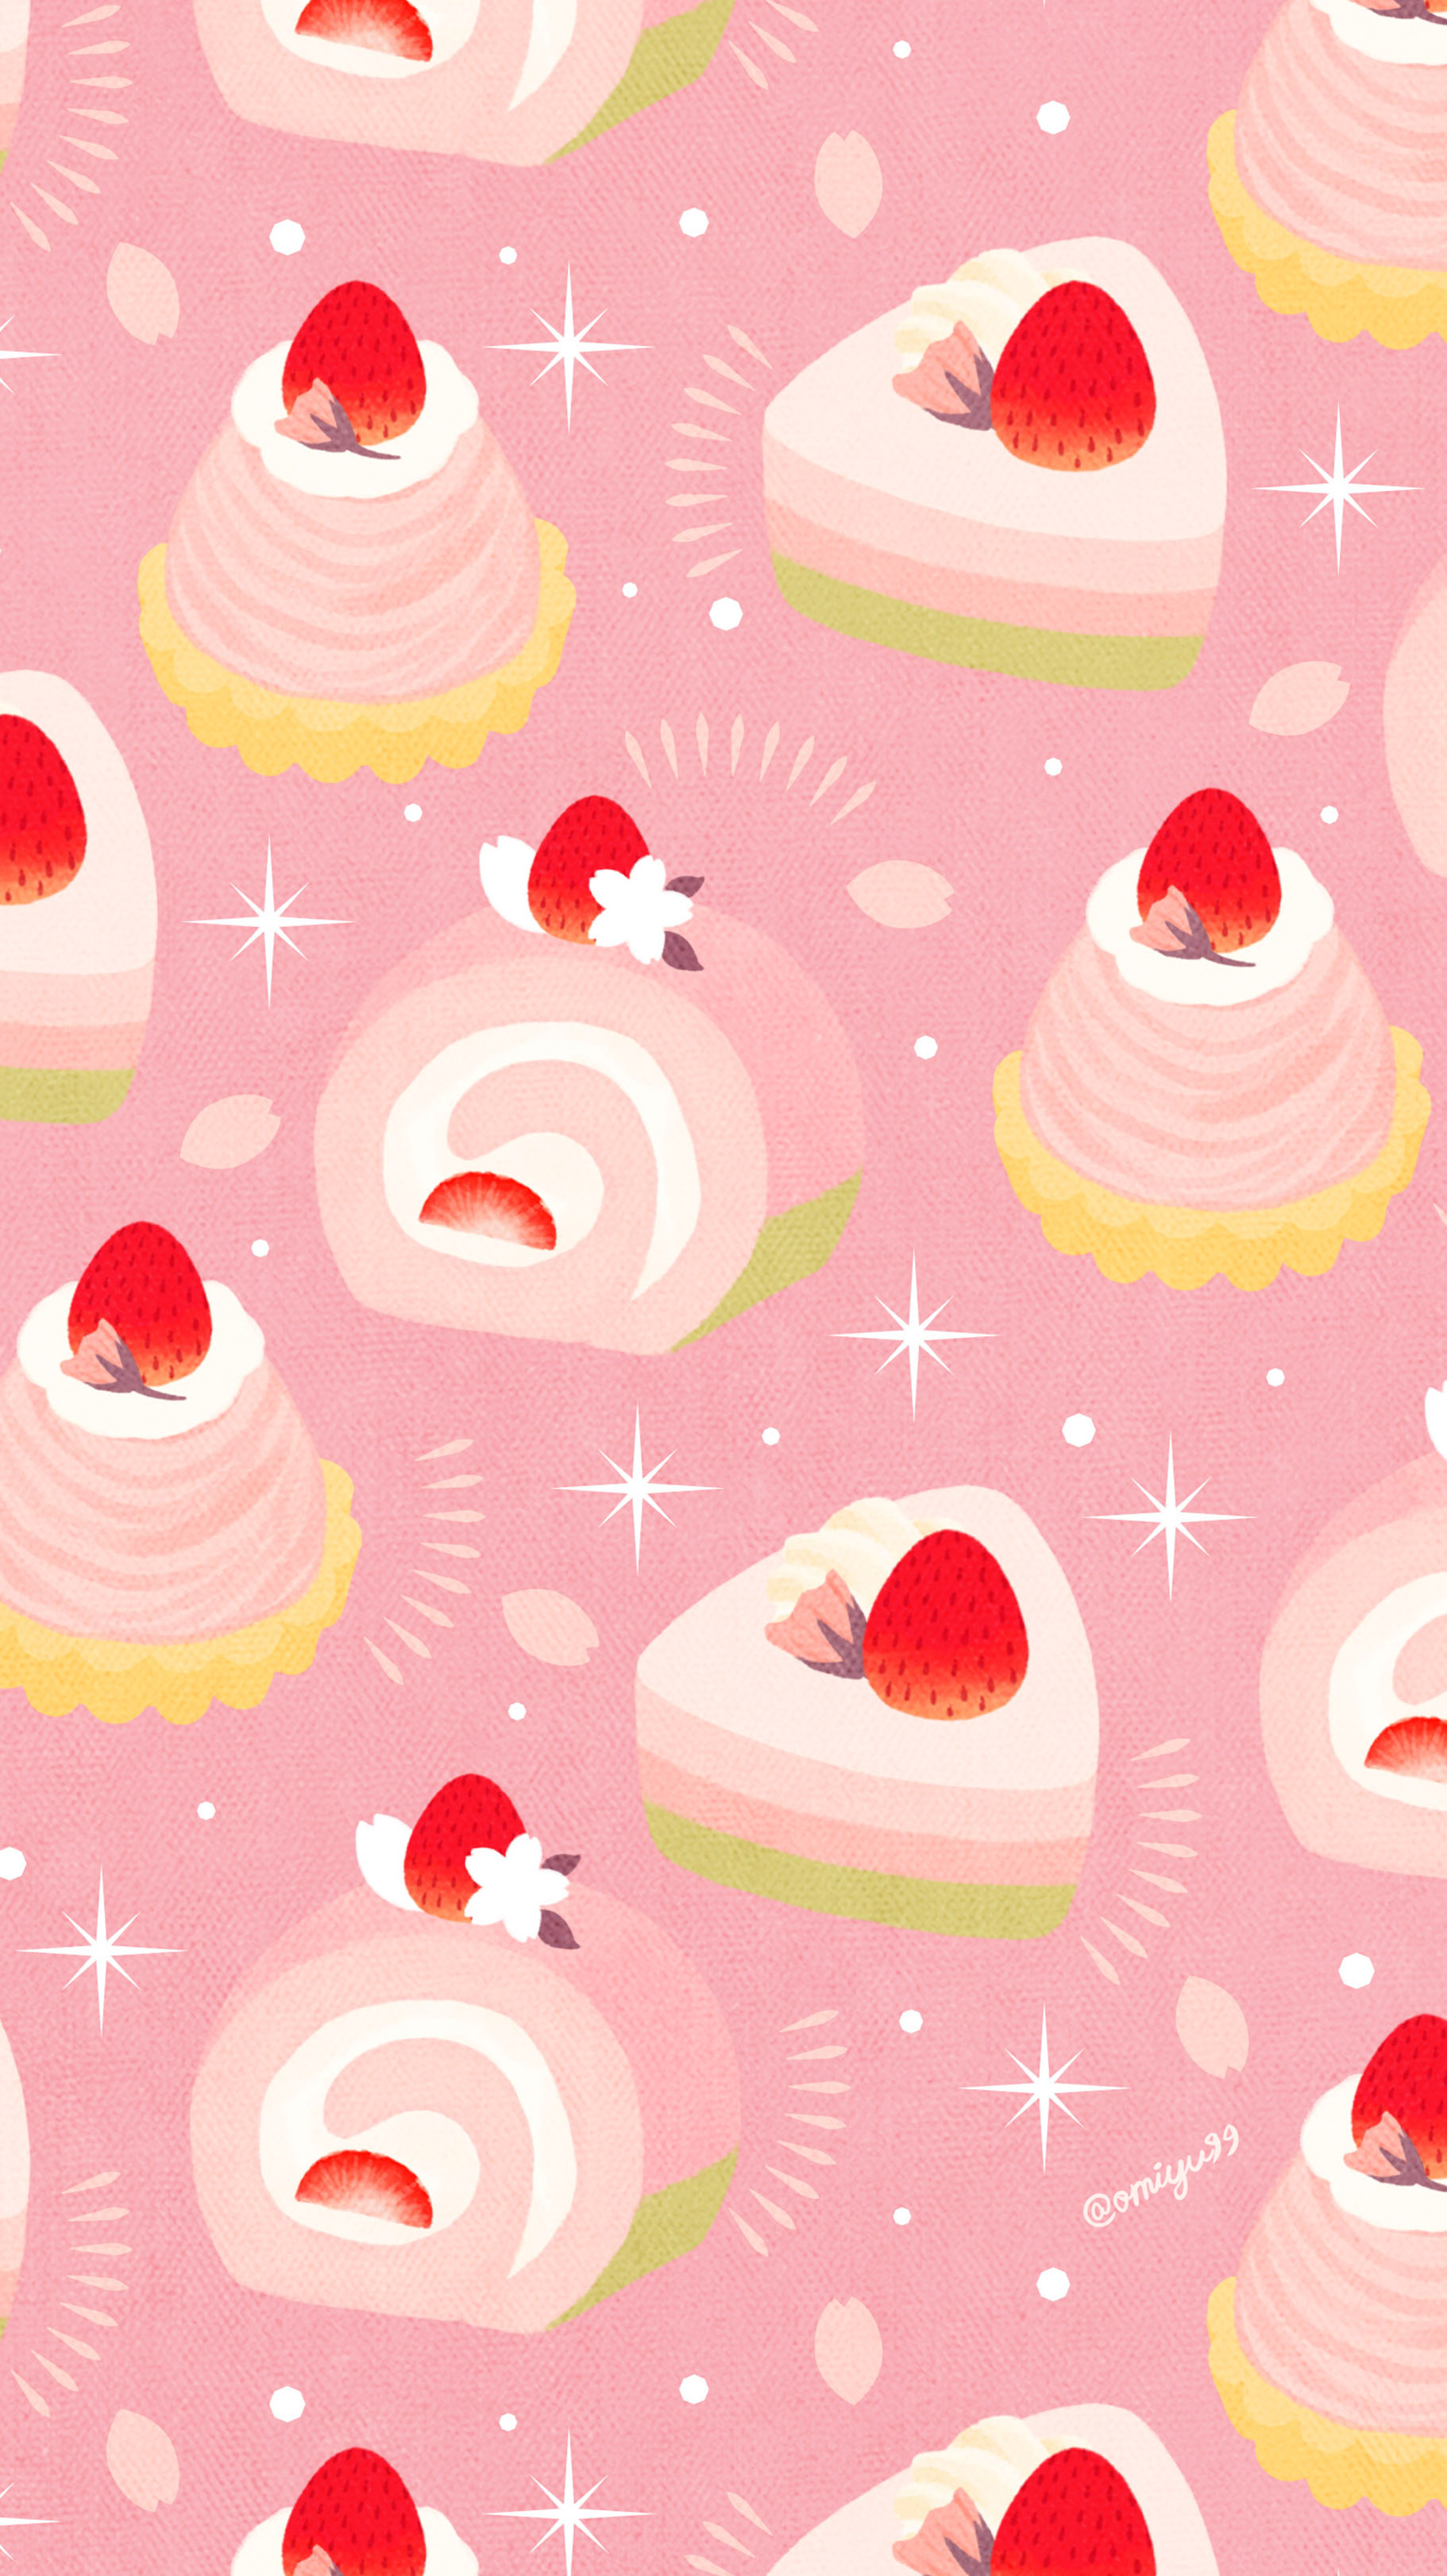 Omiyu お返事遅くなります さくらケーキな壁紙 Illust Illustration 壁紙 イラスト Iphone壁紙 ケーキ さくら 食べ物 Strawberry Cake T Co Ztuorieocr Twitter